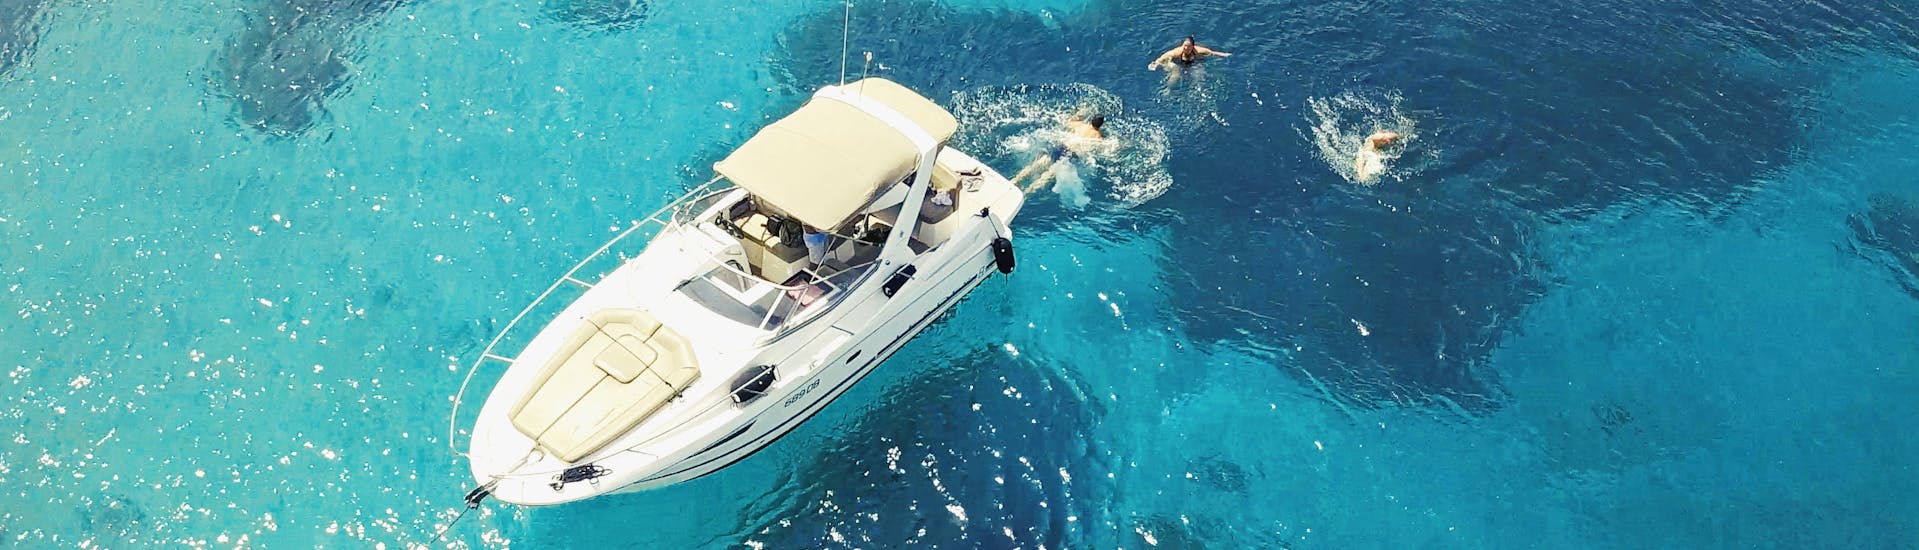 Bateau sur l'eau cristalline pendant la demi-journée d'excursion privée avec un bateau à moteur de luxe vers les îles Élaphites au départ de Dubrovnik organisé par Snooky Tours Dubrovnik.